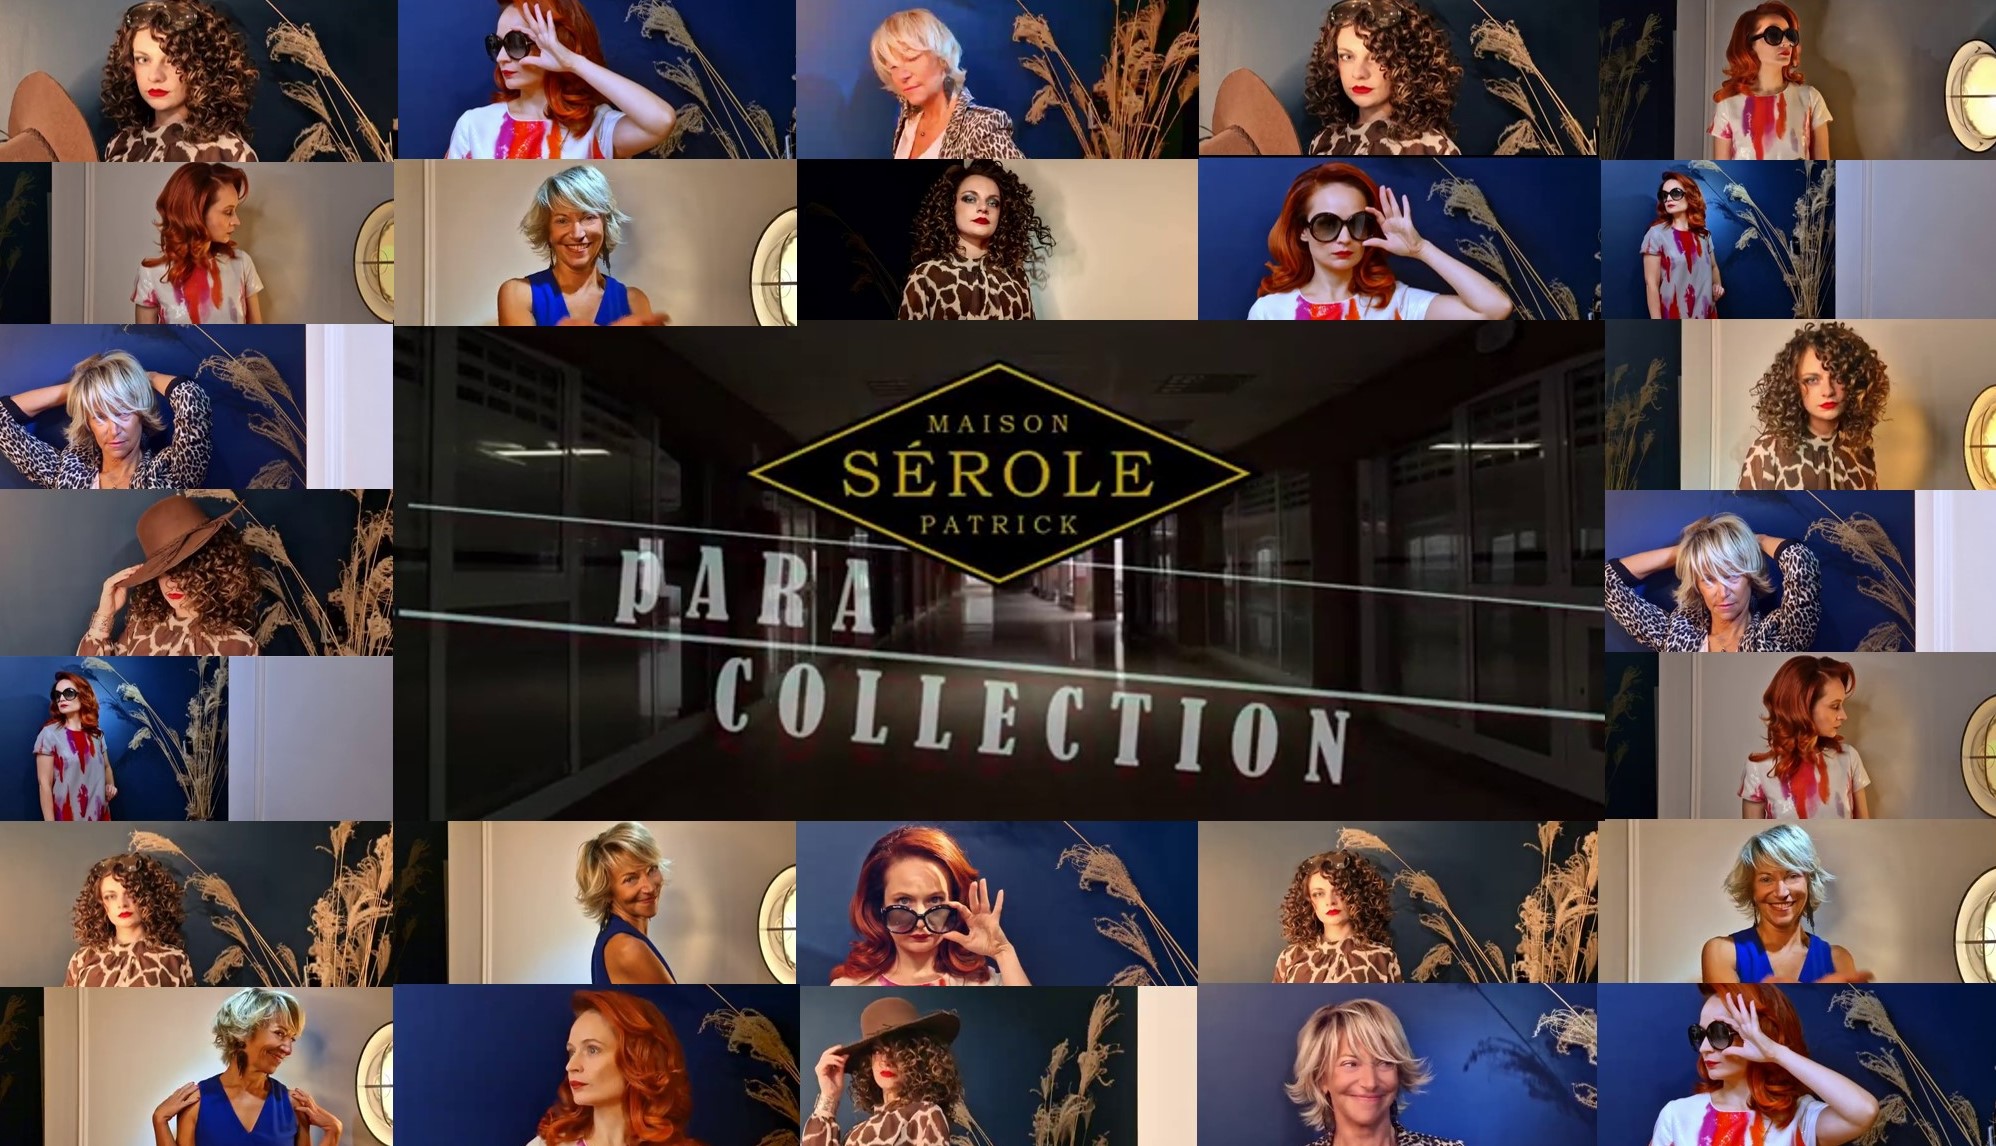 Maison Patrick Sérole's pARA-collection